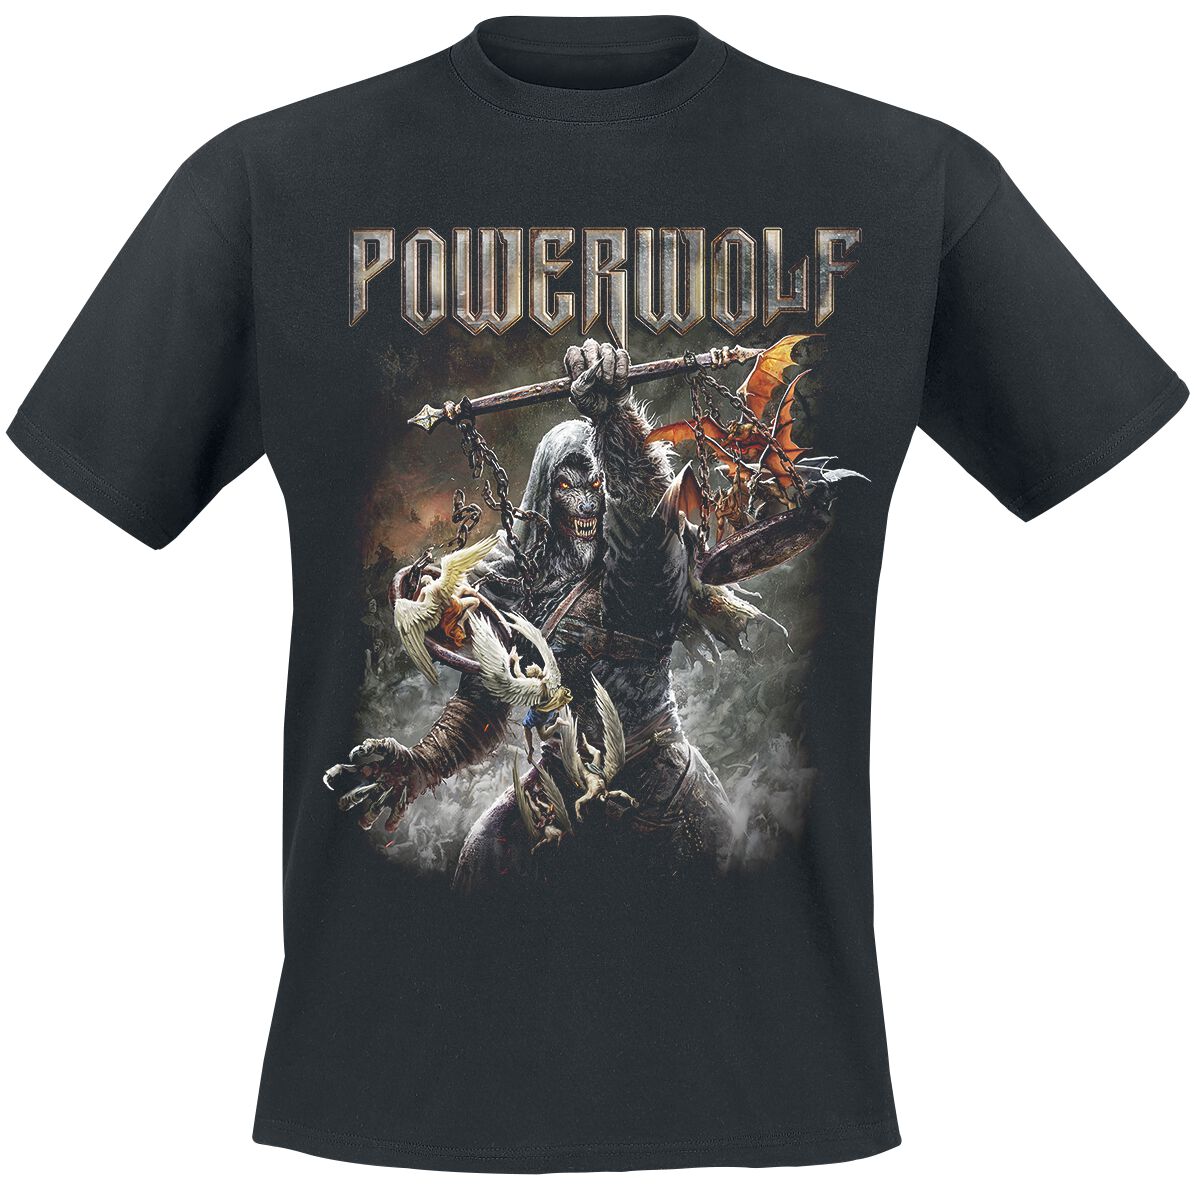 Powerwolf T-Shirt - Call Of The Wild - M bis 5XL - für Männer - Größe XXL - schwarz  - Lizenziertes Merchandise!